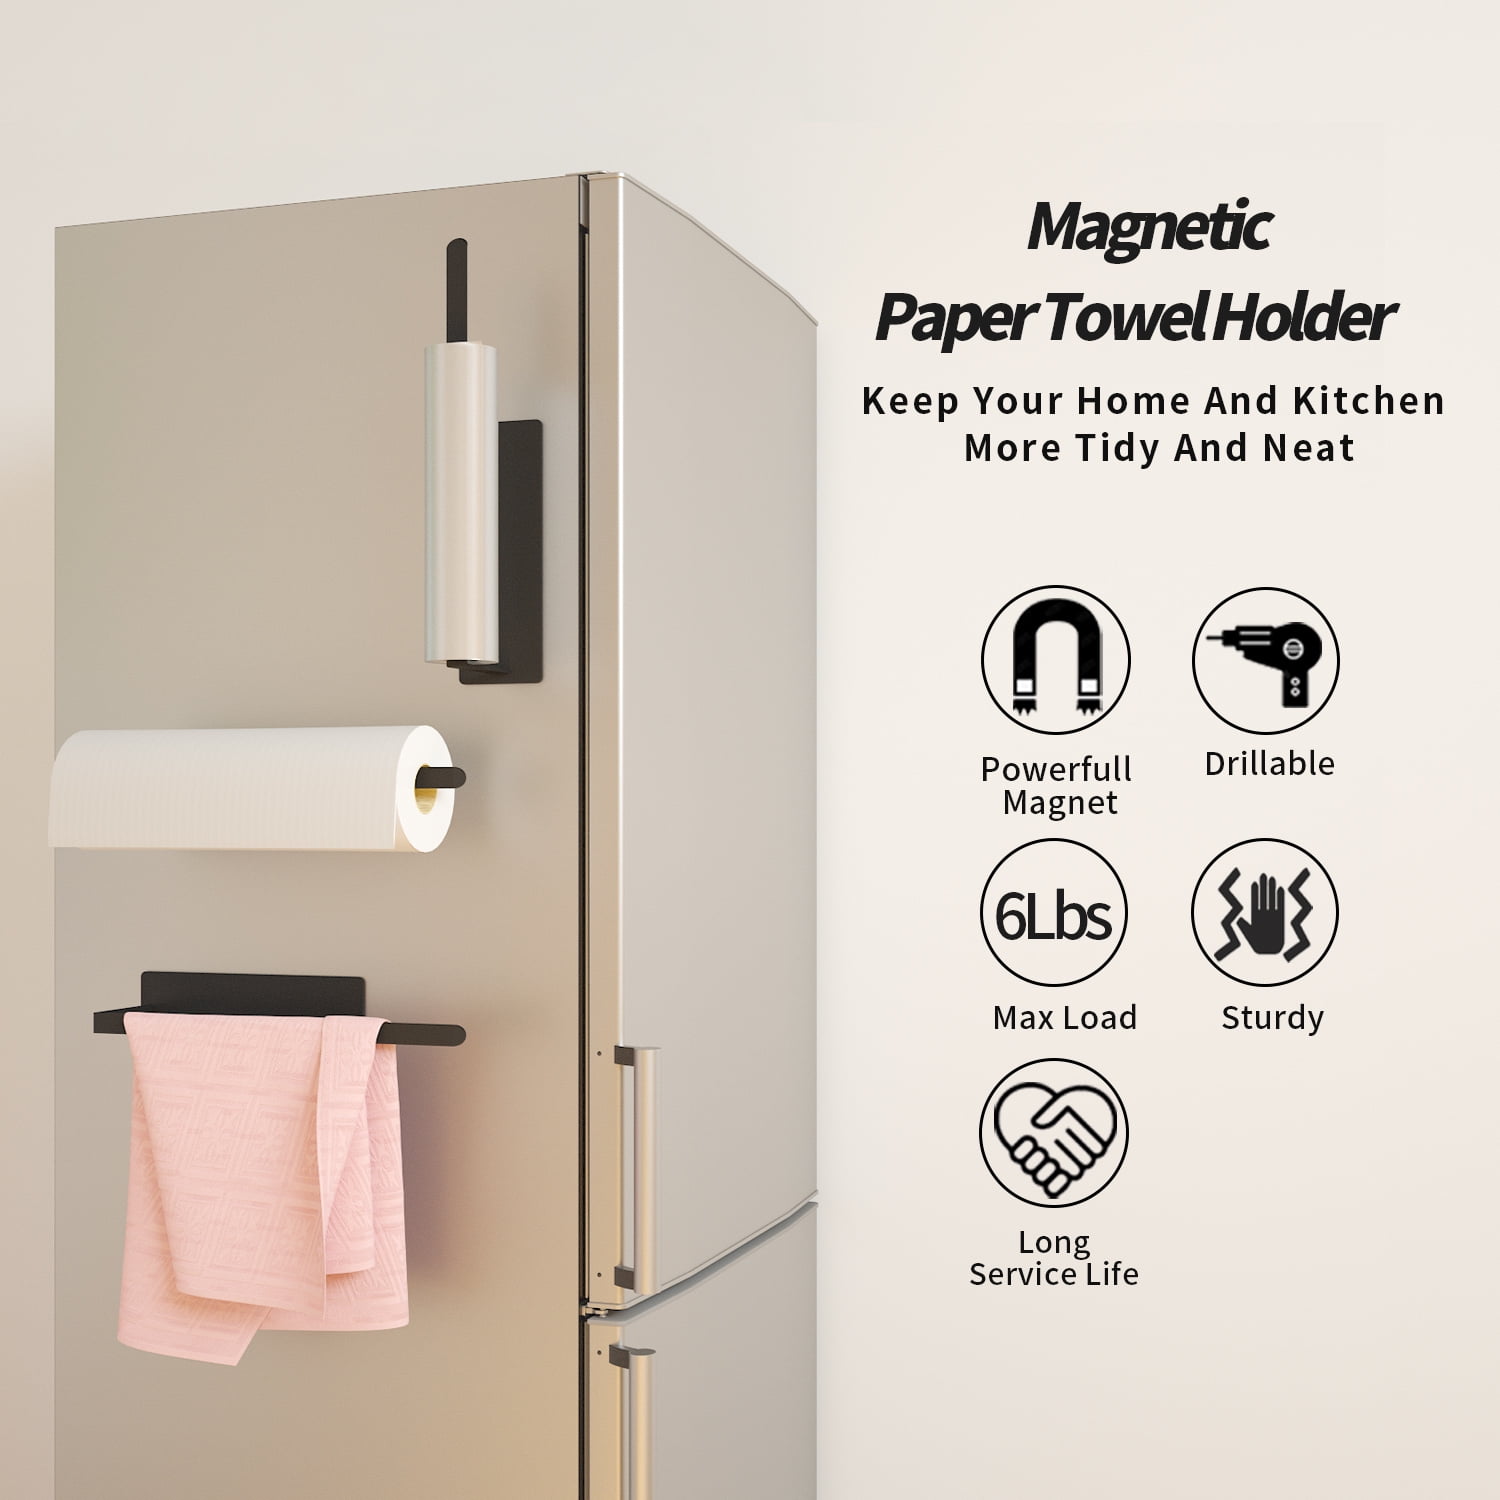 Master Magnetics Handy Holder™ Magnetic Paper Towel Holder